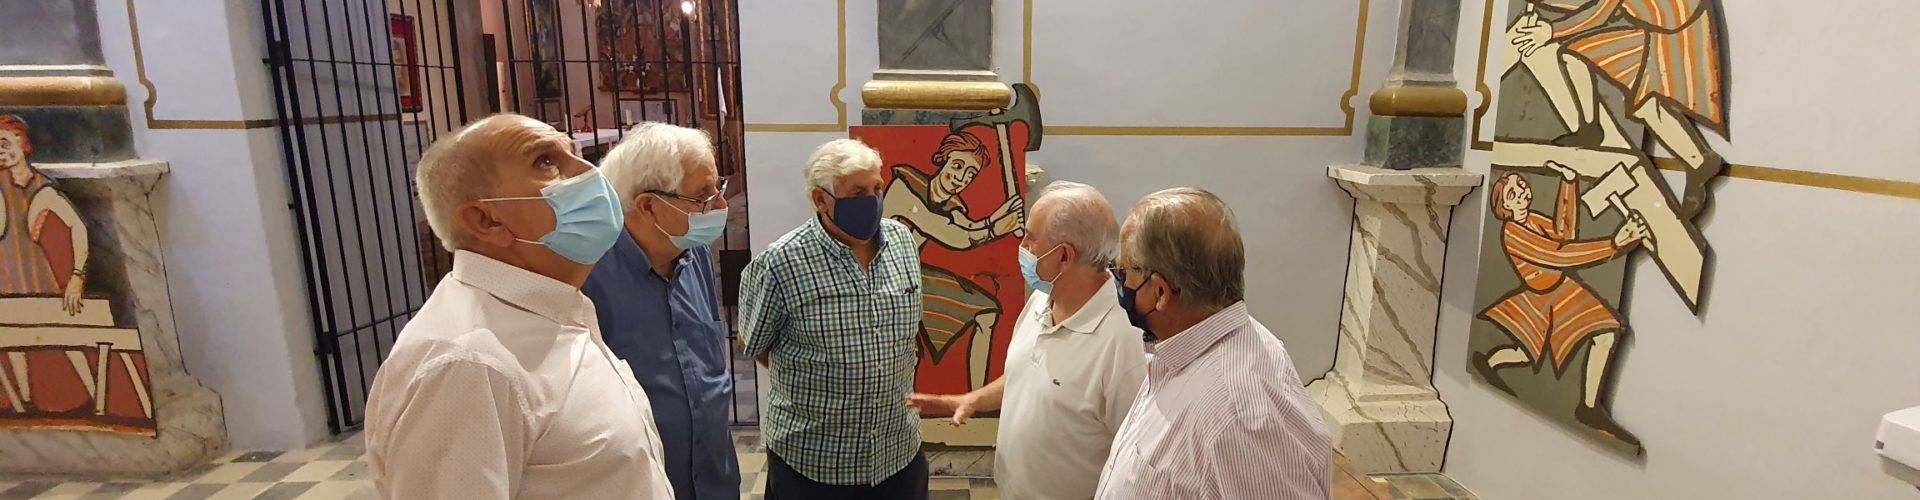 Amat Bellés pide completar la recuperación de las pinturas medievales de la iglesia de Vallibona